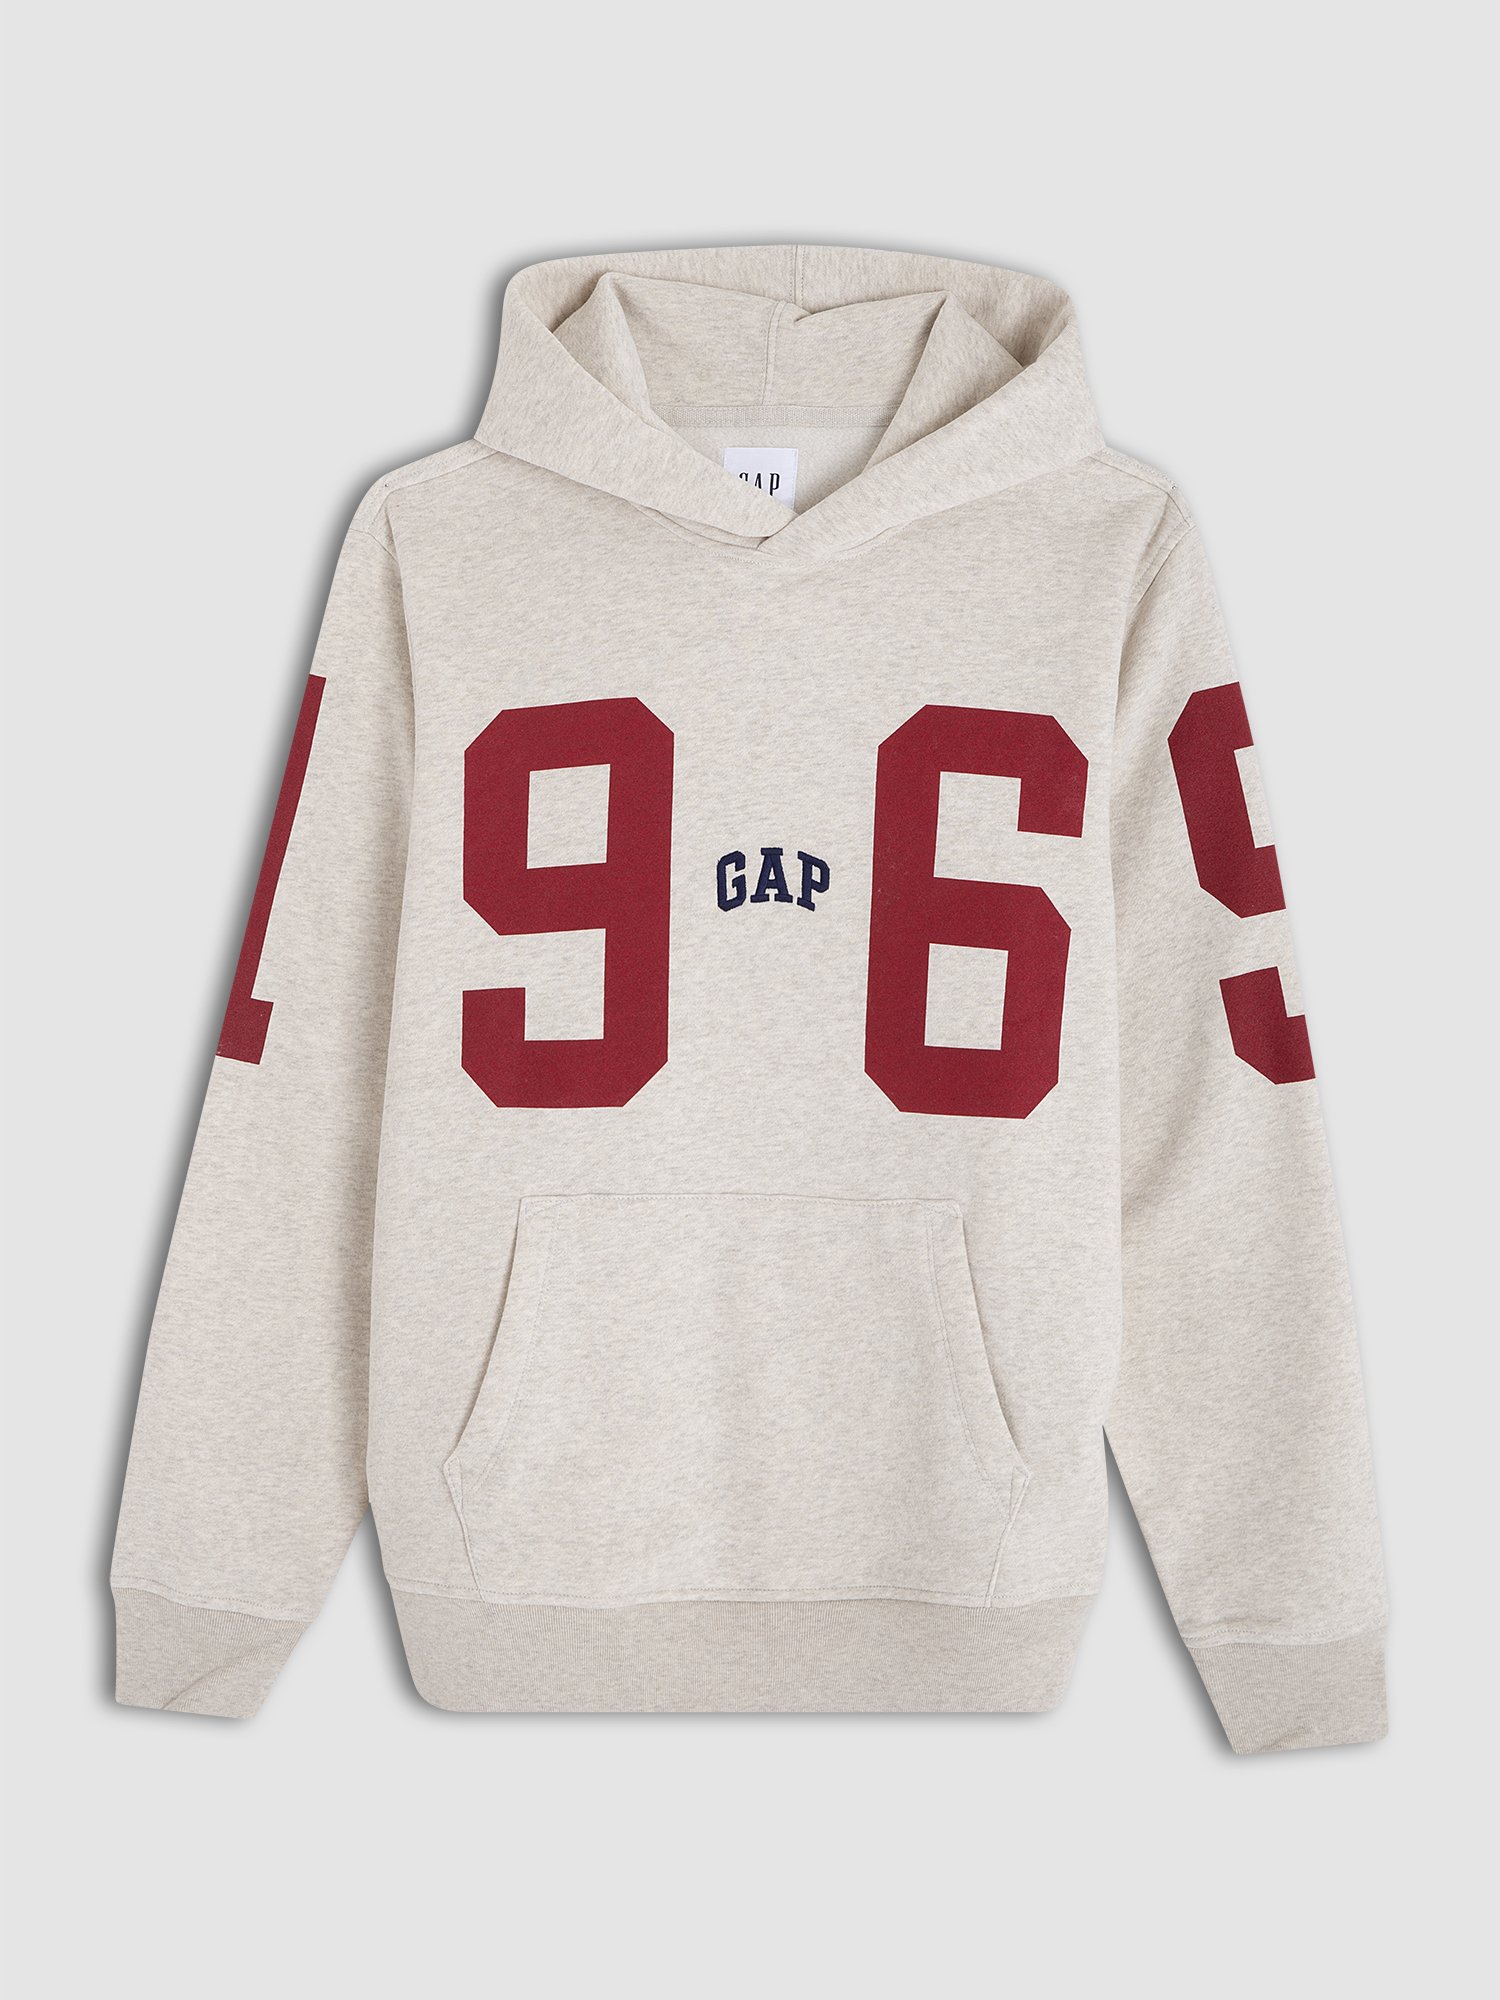 Gap Logo Vintage Kapüşonlu Sweatshirt product image